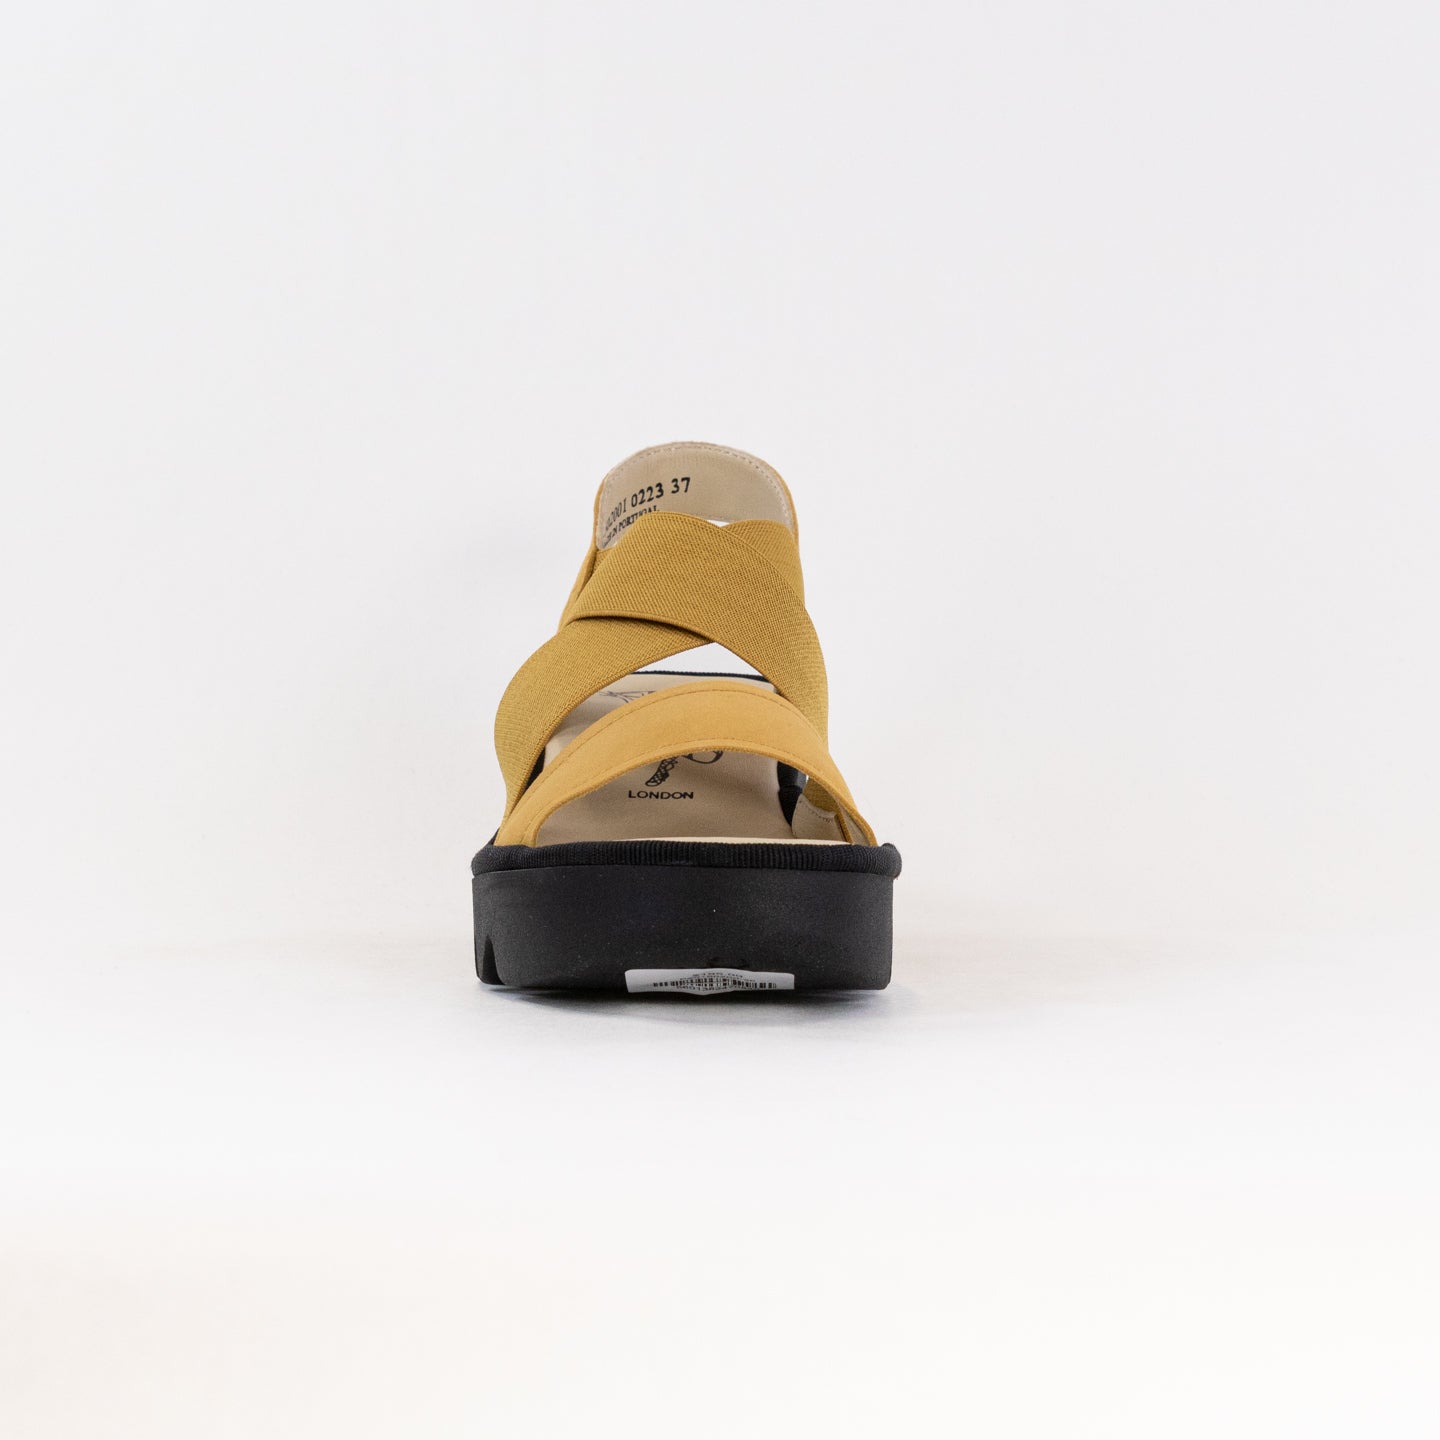 FLY London Crossover Sandals TAJI502FLY (Women's) - Bumblebee